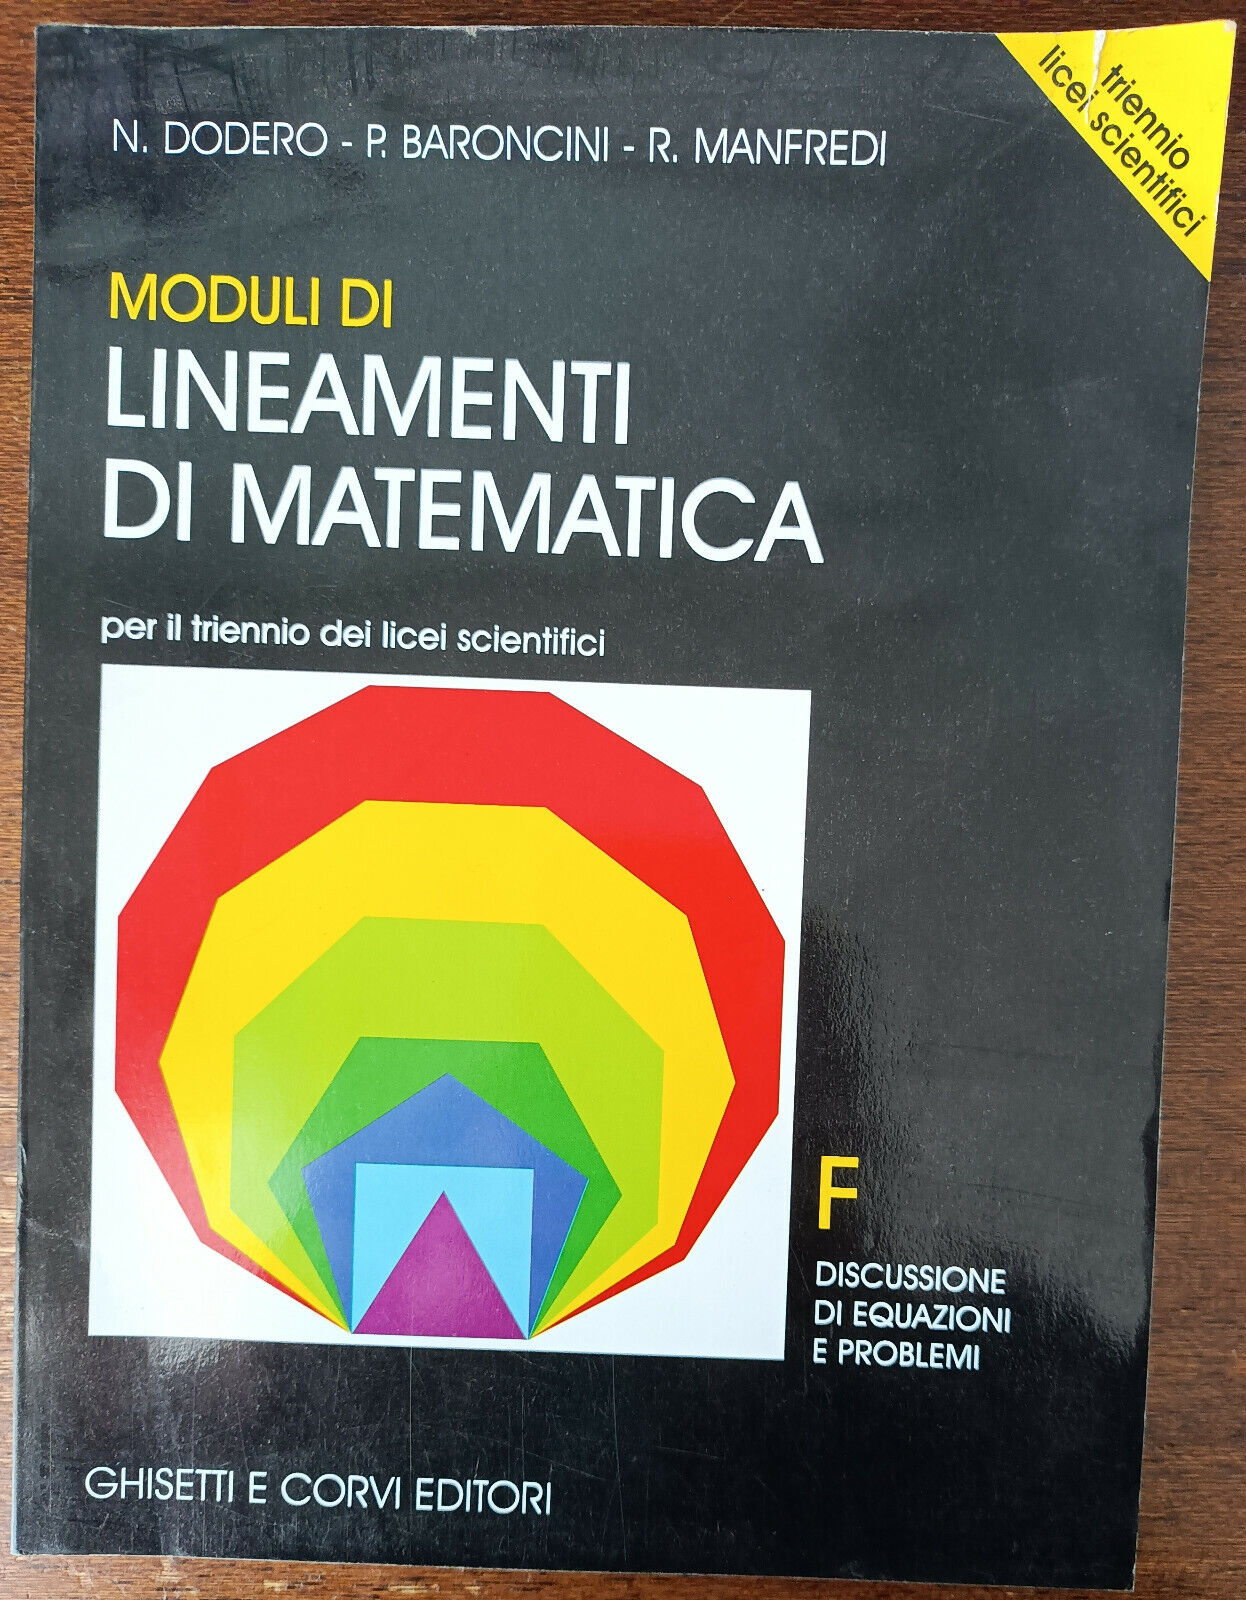 Moduli di lineamenti di matematica F. -Dodero, Baroncini-Ghisetti e Corvi,2001-A